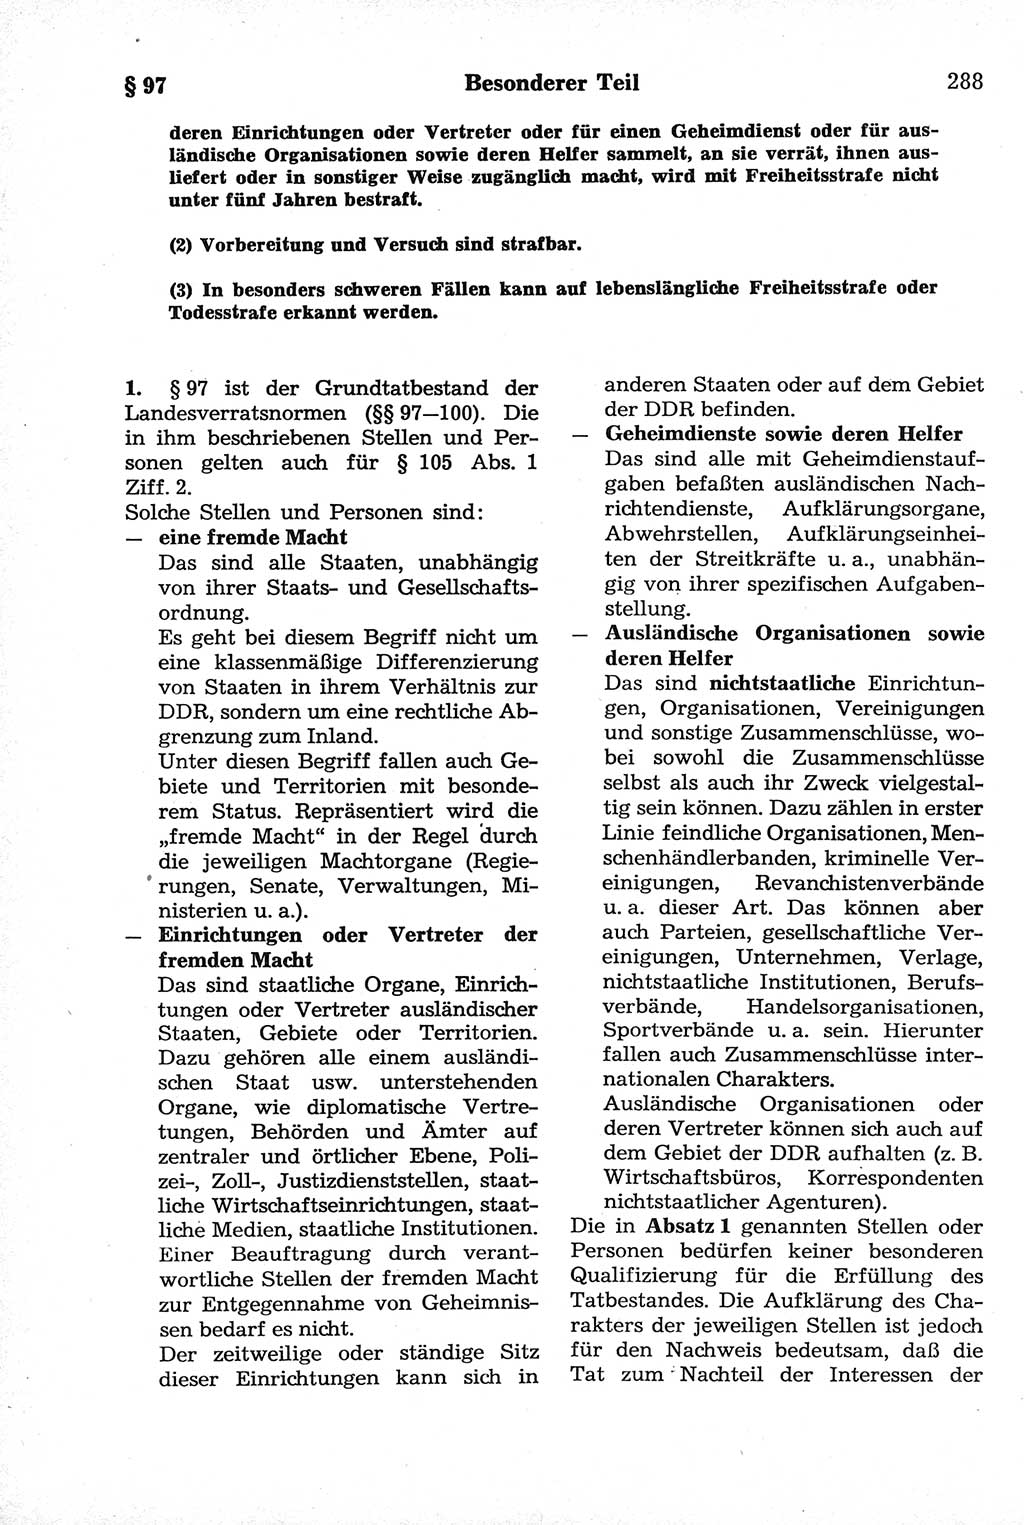 Strafrecht der Deutschen Demokratischen Republik (DDR), Kommentar zum Strafgesetzbuch (StGB) 1981, Seite 288 (Strafr. DDR Komm. StGB 1981, S. 288)